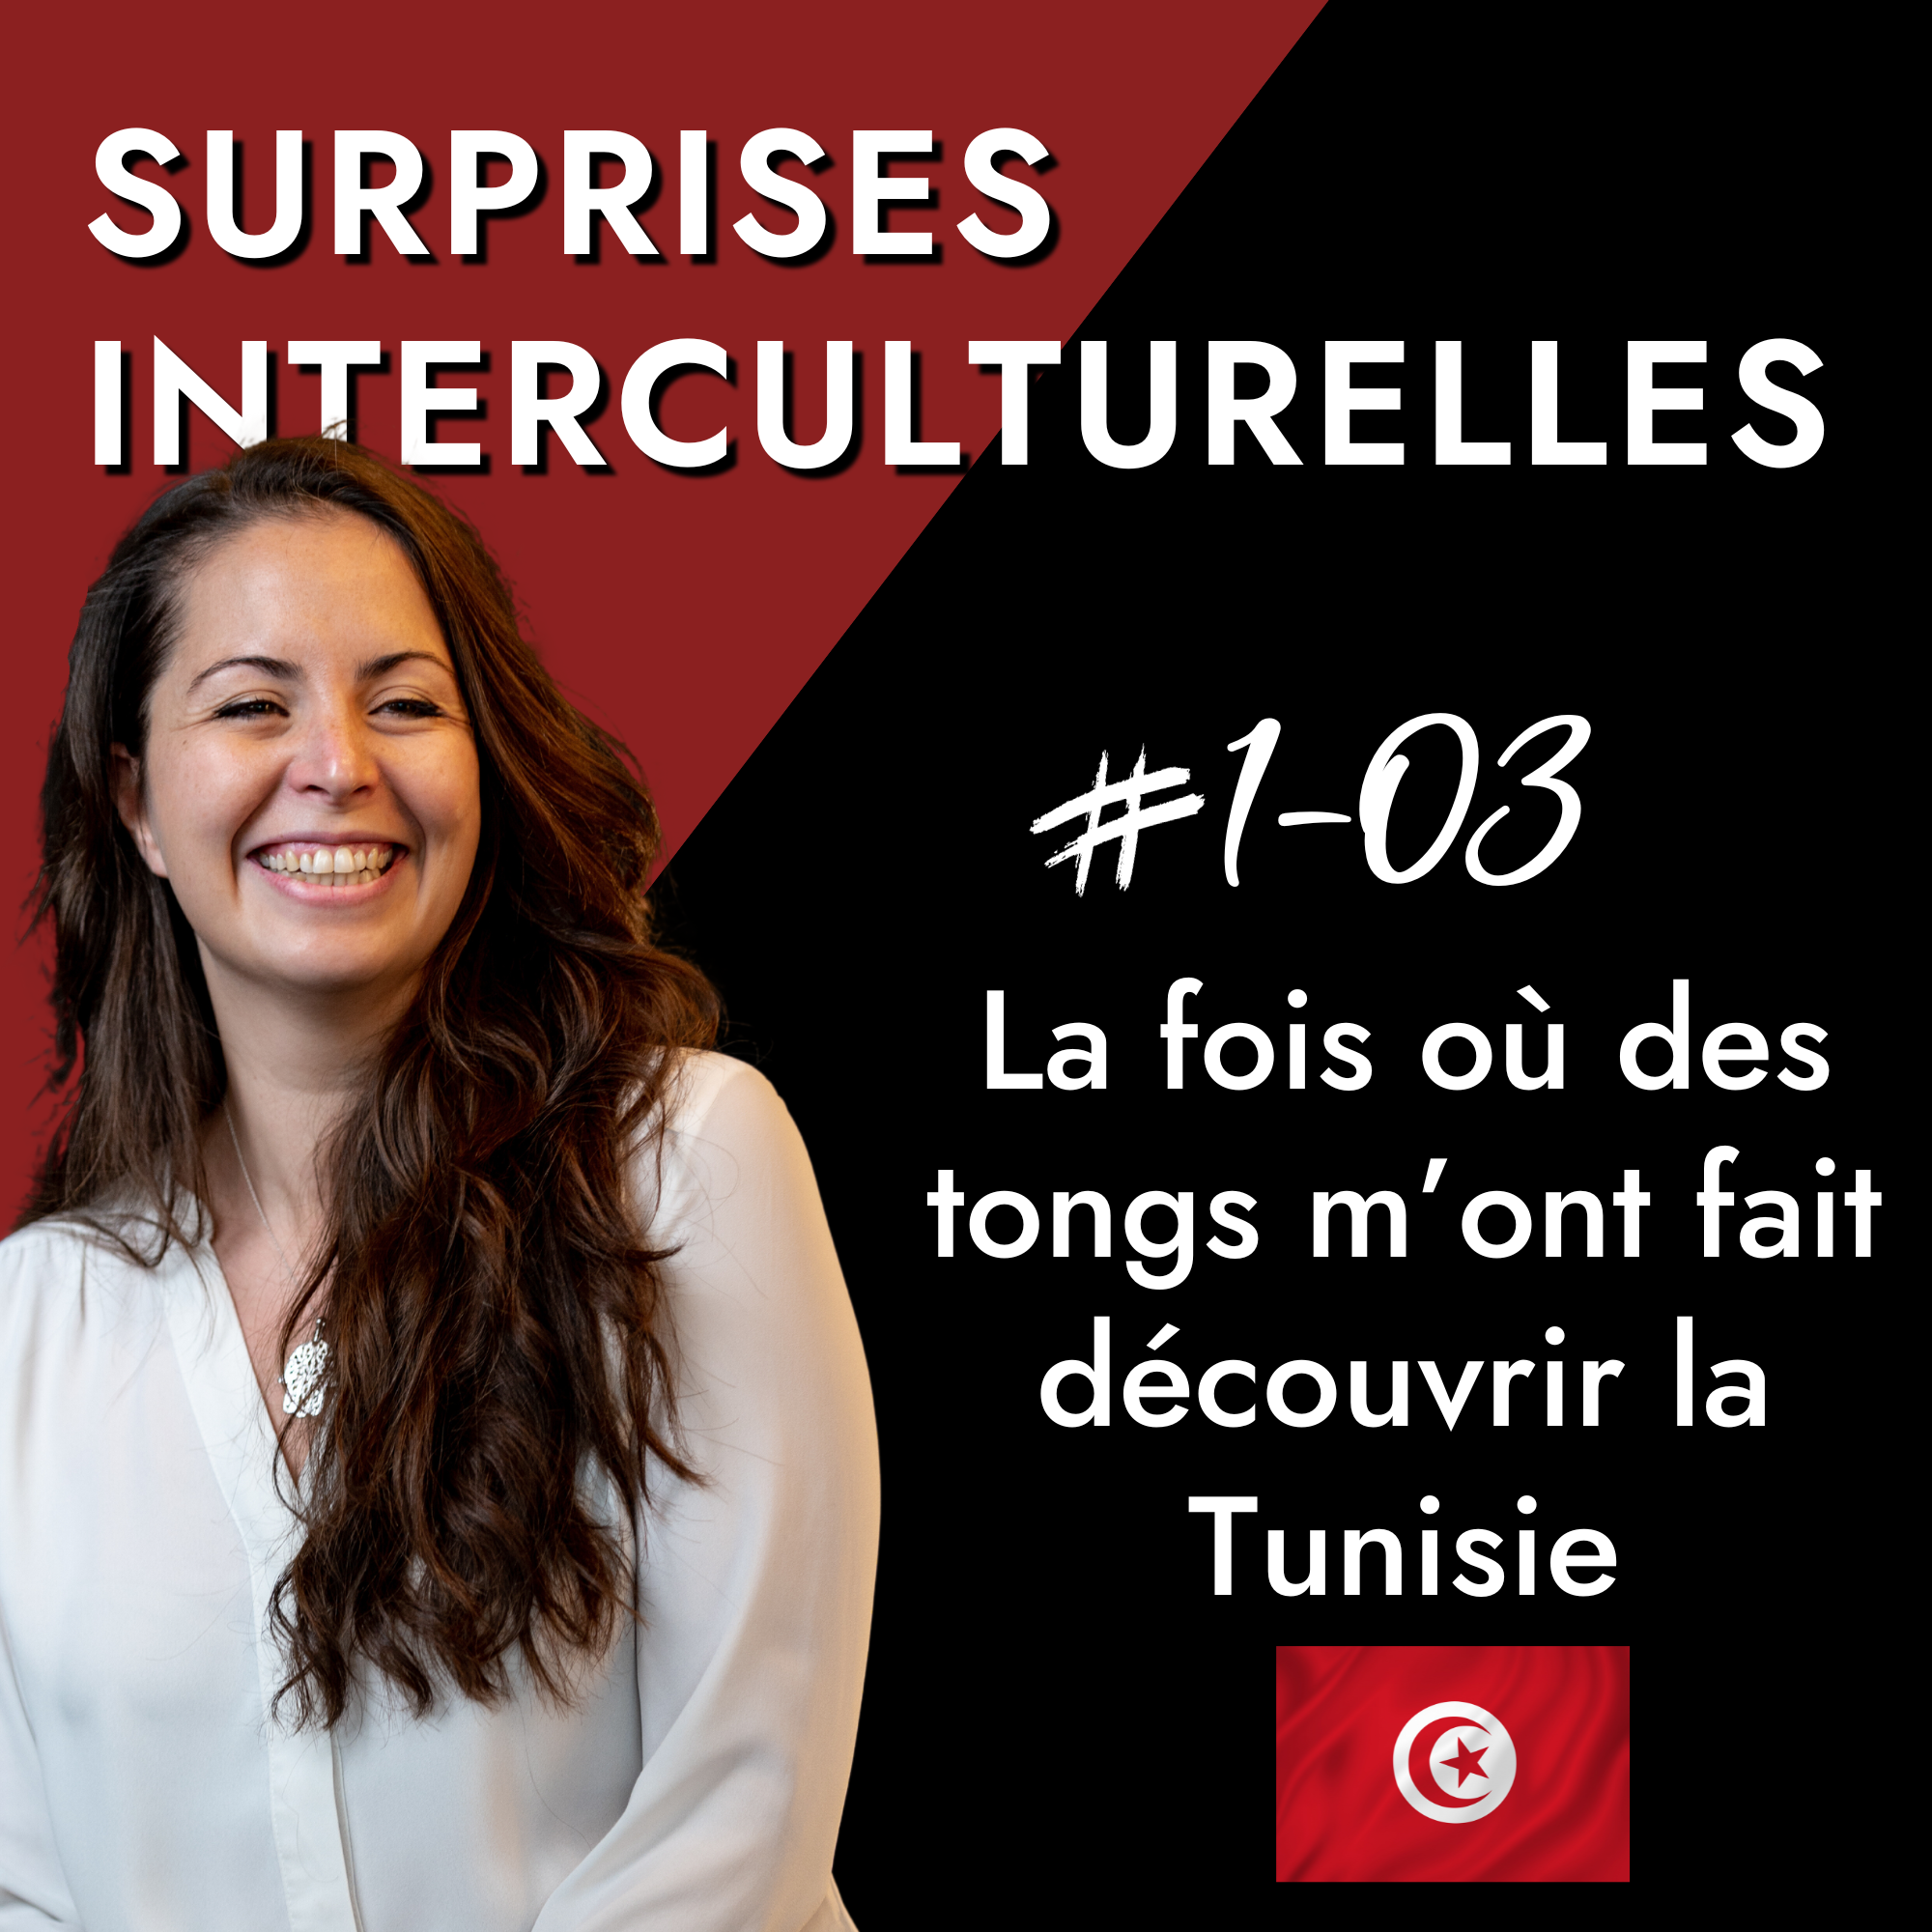 Surprises Interculturelles - Tunisia and its superstitions